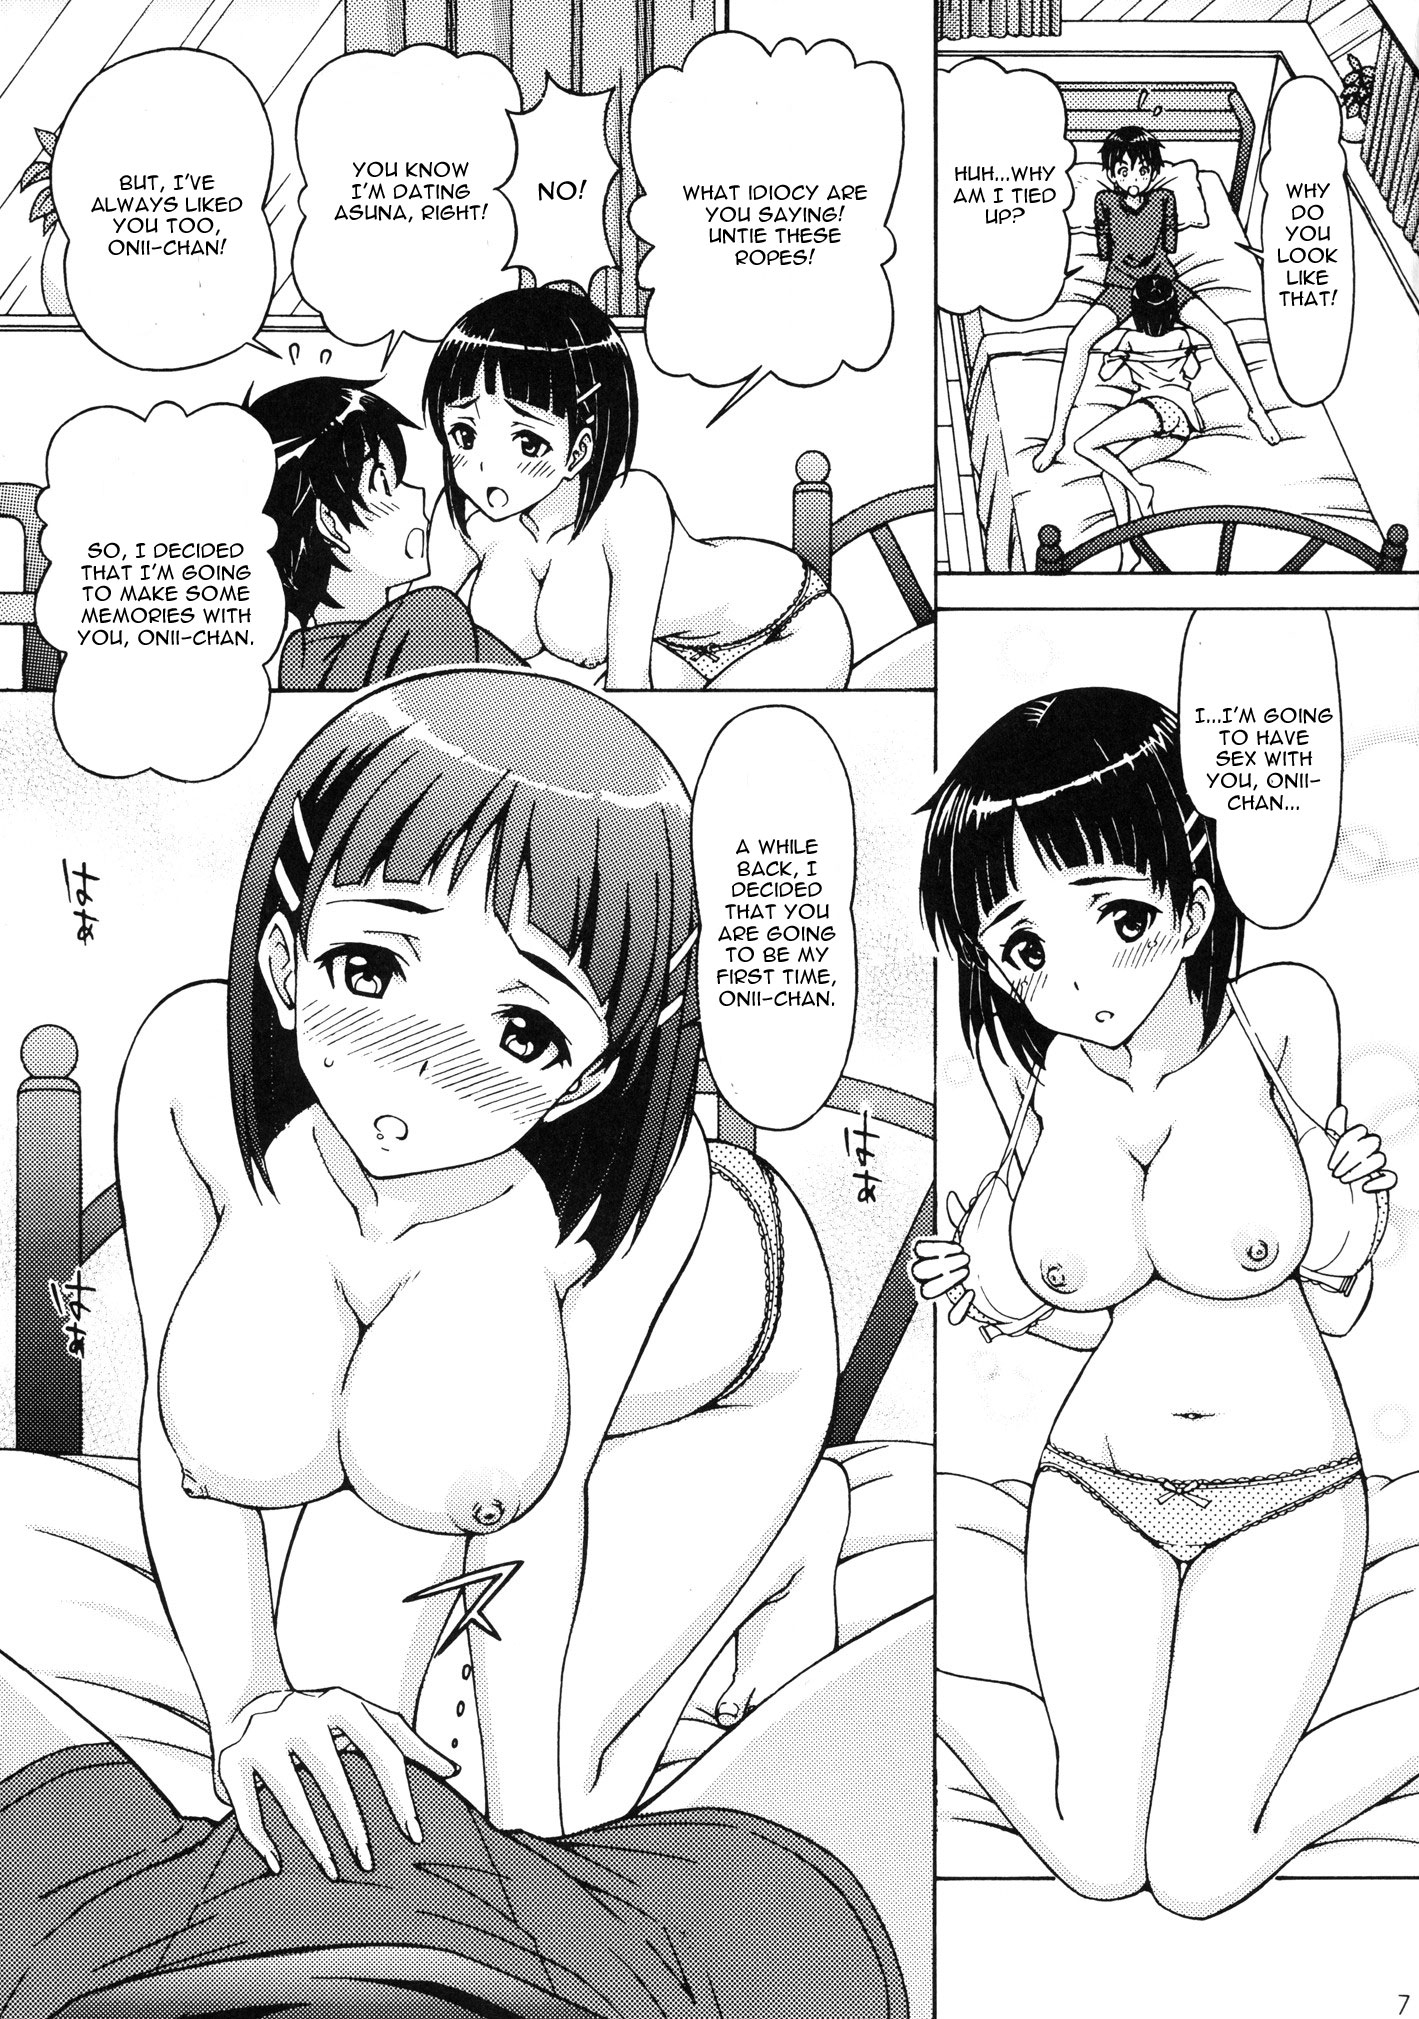 Suguha Kirigaya Porn - suguha kirigaya incest kazuto kirigaya porn hentai pictures - XXXPicz